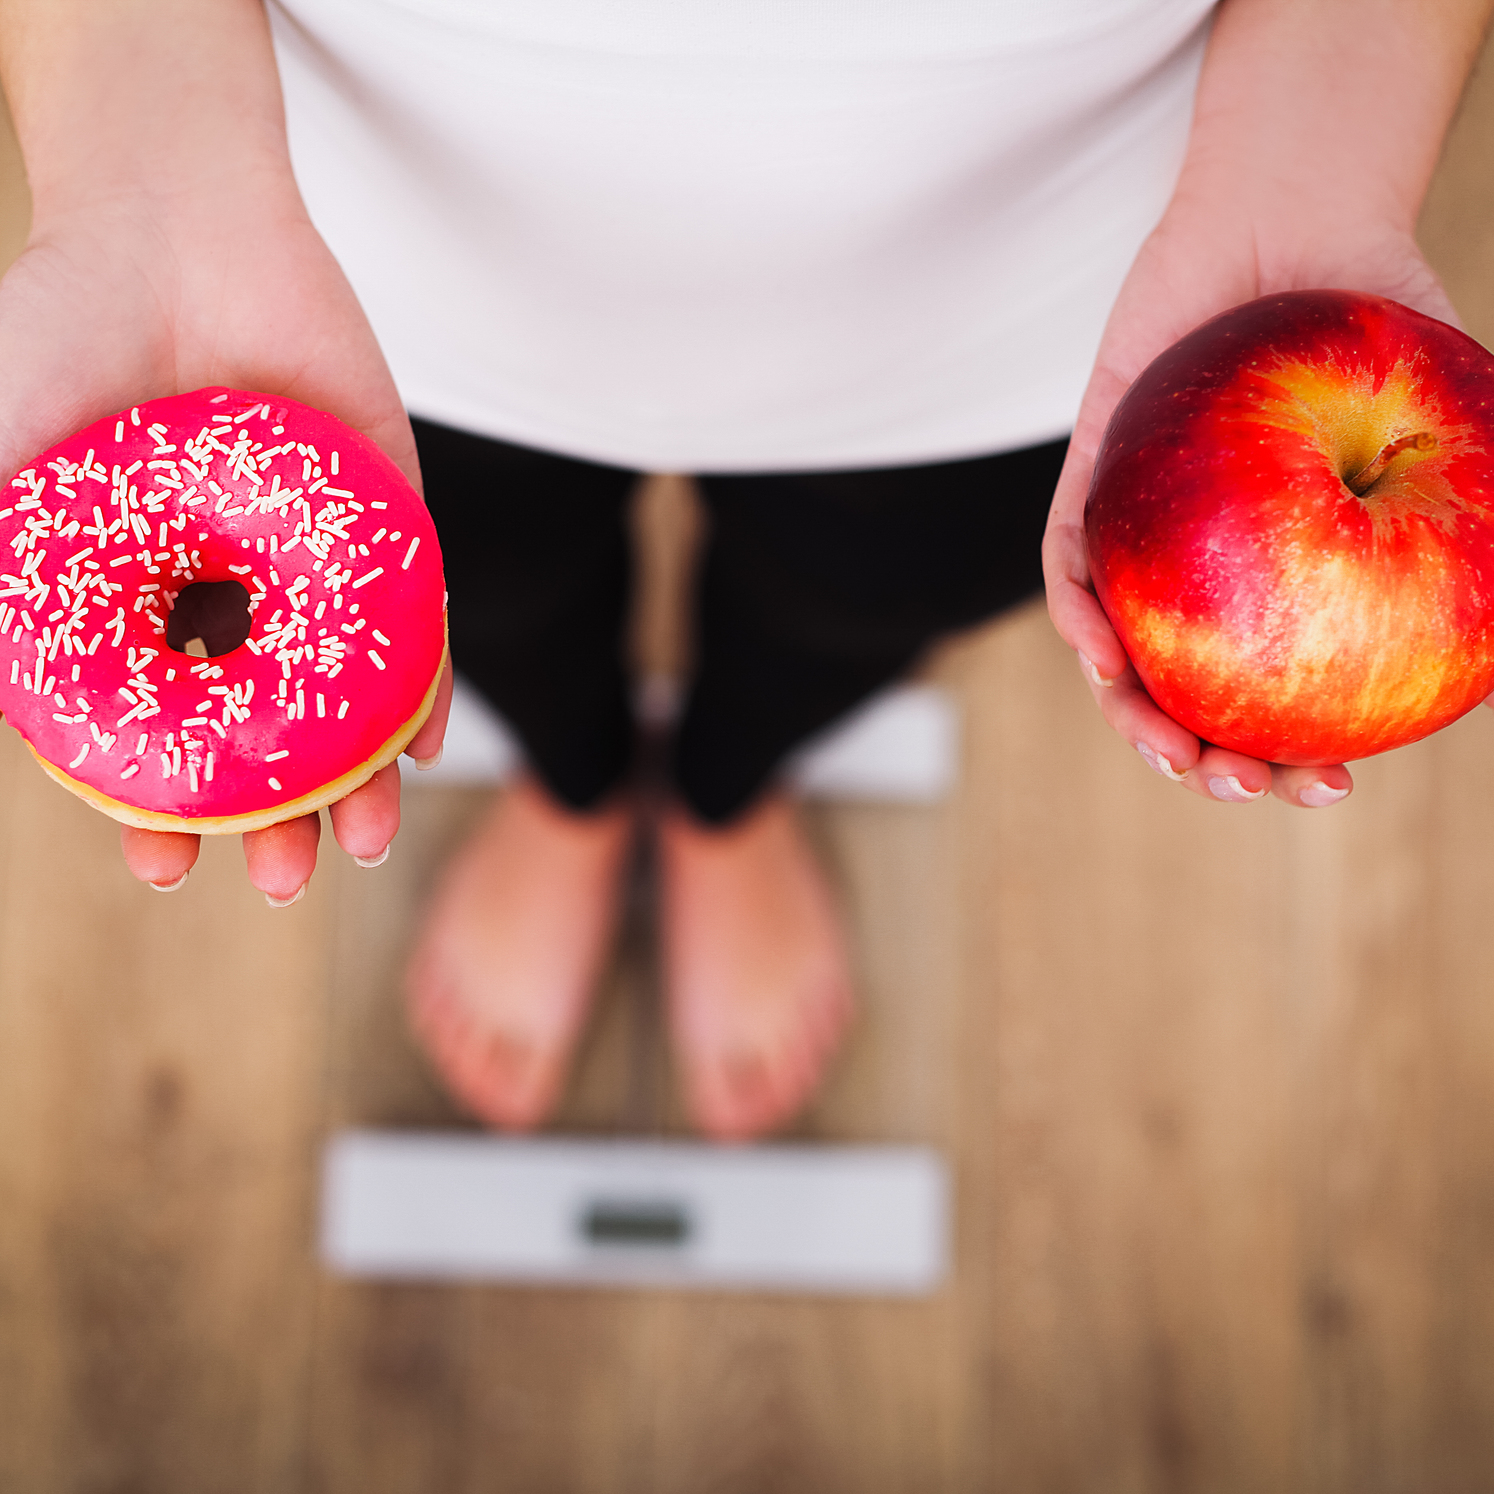 תפוח או דונאט? זאת השאלה. דיאטה דלת קלוריות הפחיתה את כמות השומן בכבד ובלבלב, שיפרה את ייצור האינסולין והביאה לנסיגה במחלה